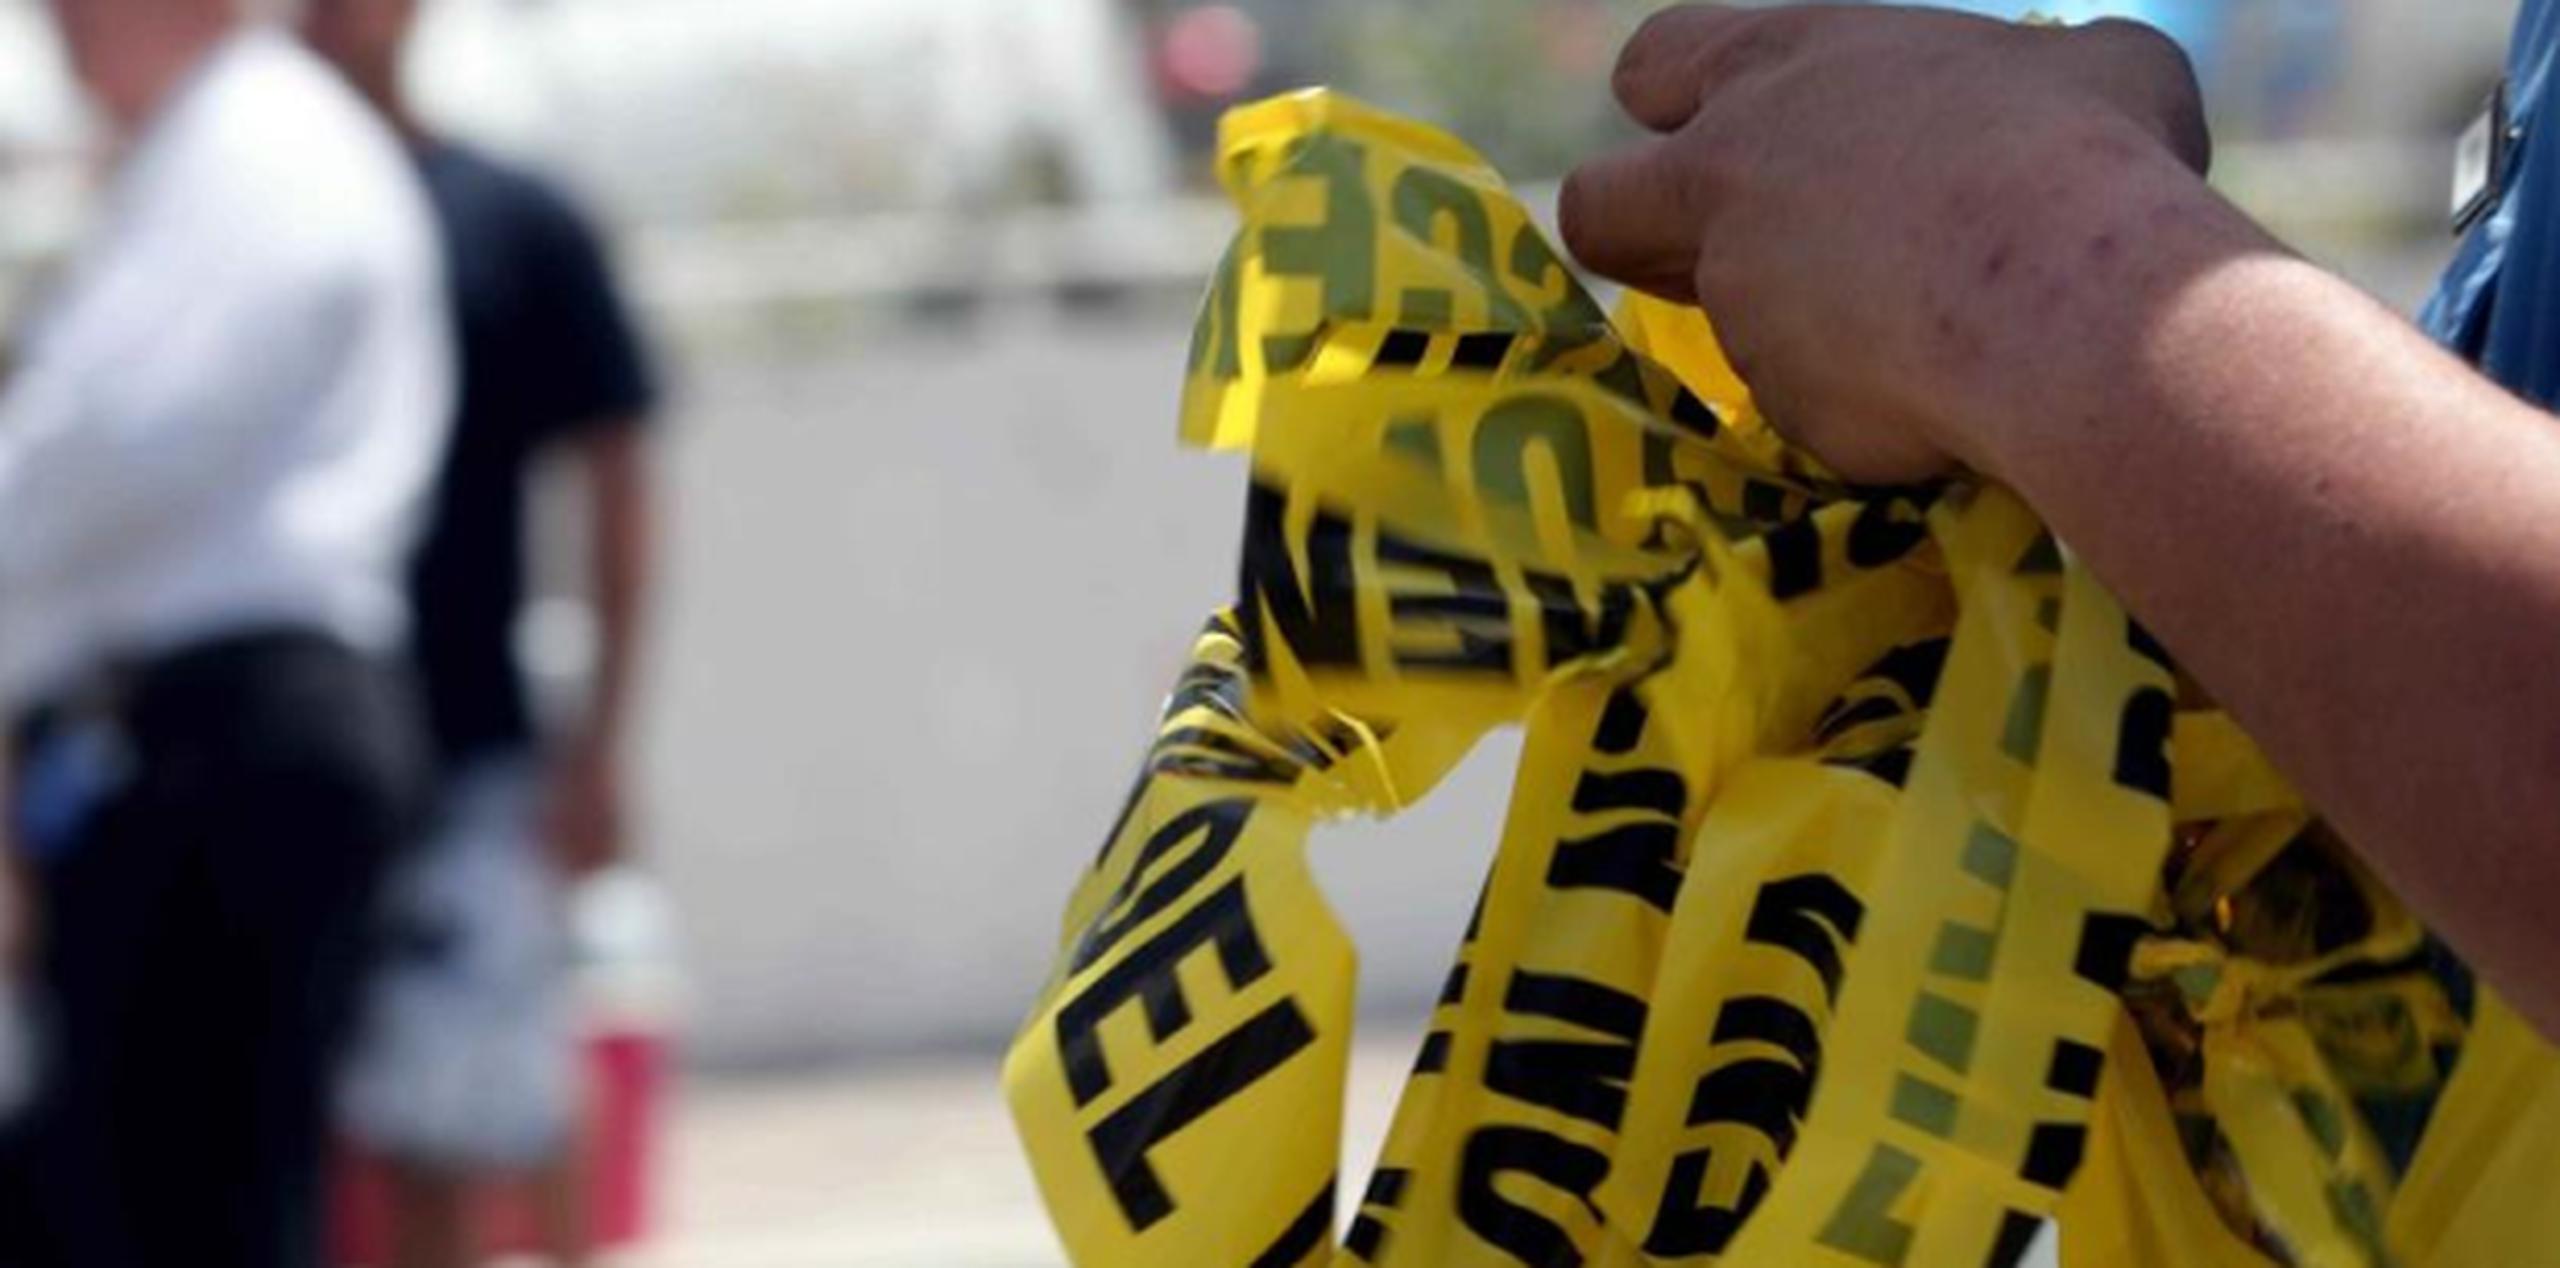 Con este crimen, la cifra de homicidios aumentó a 213 en lo que del año. (Archivo)